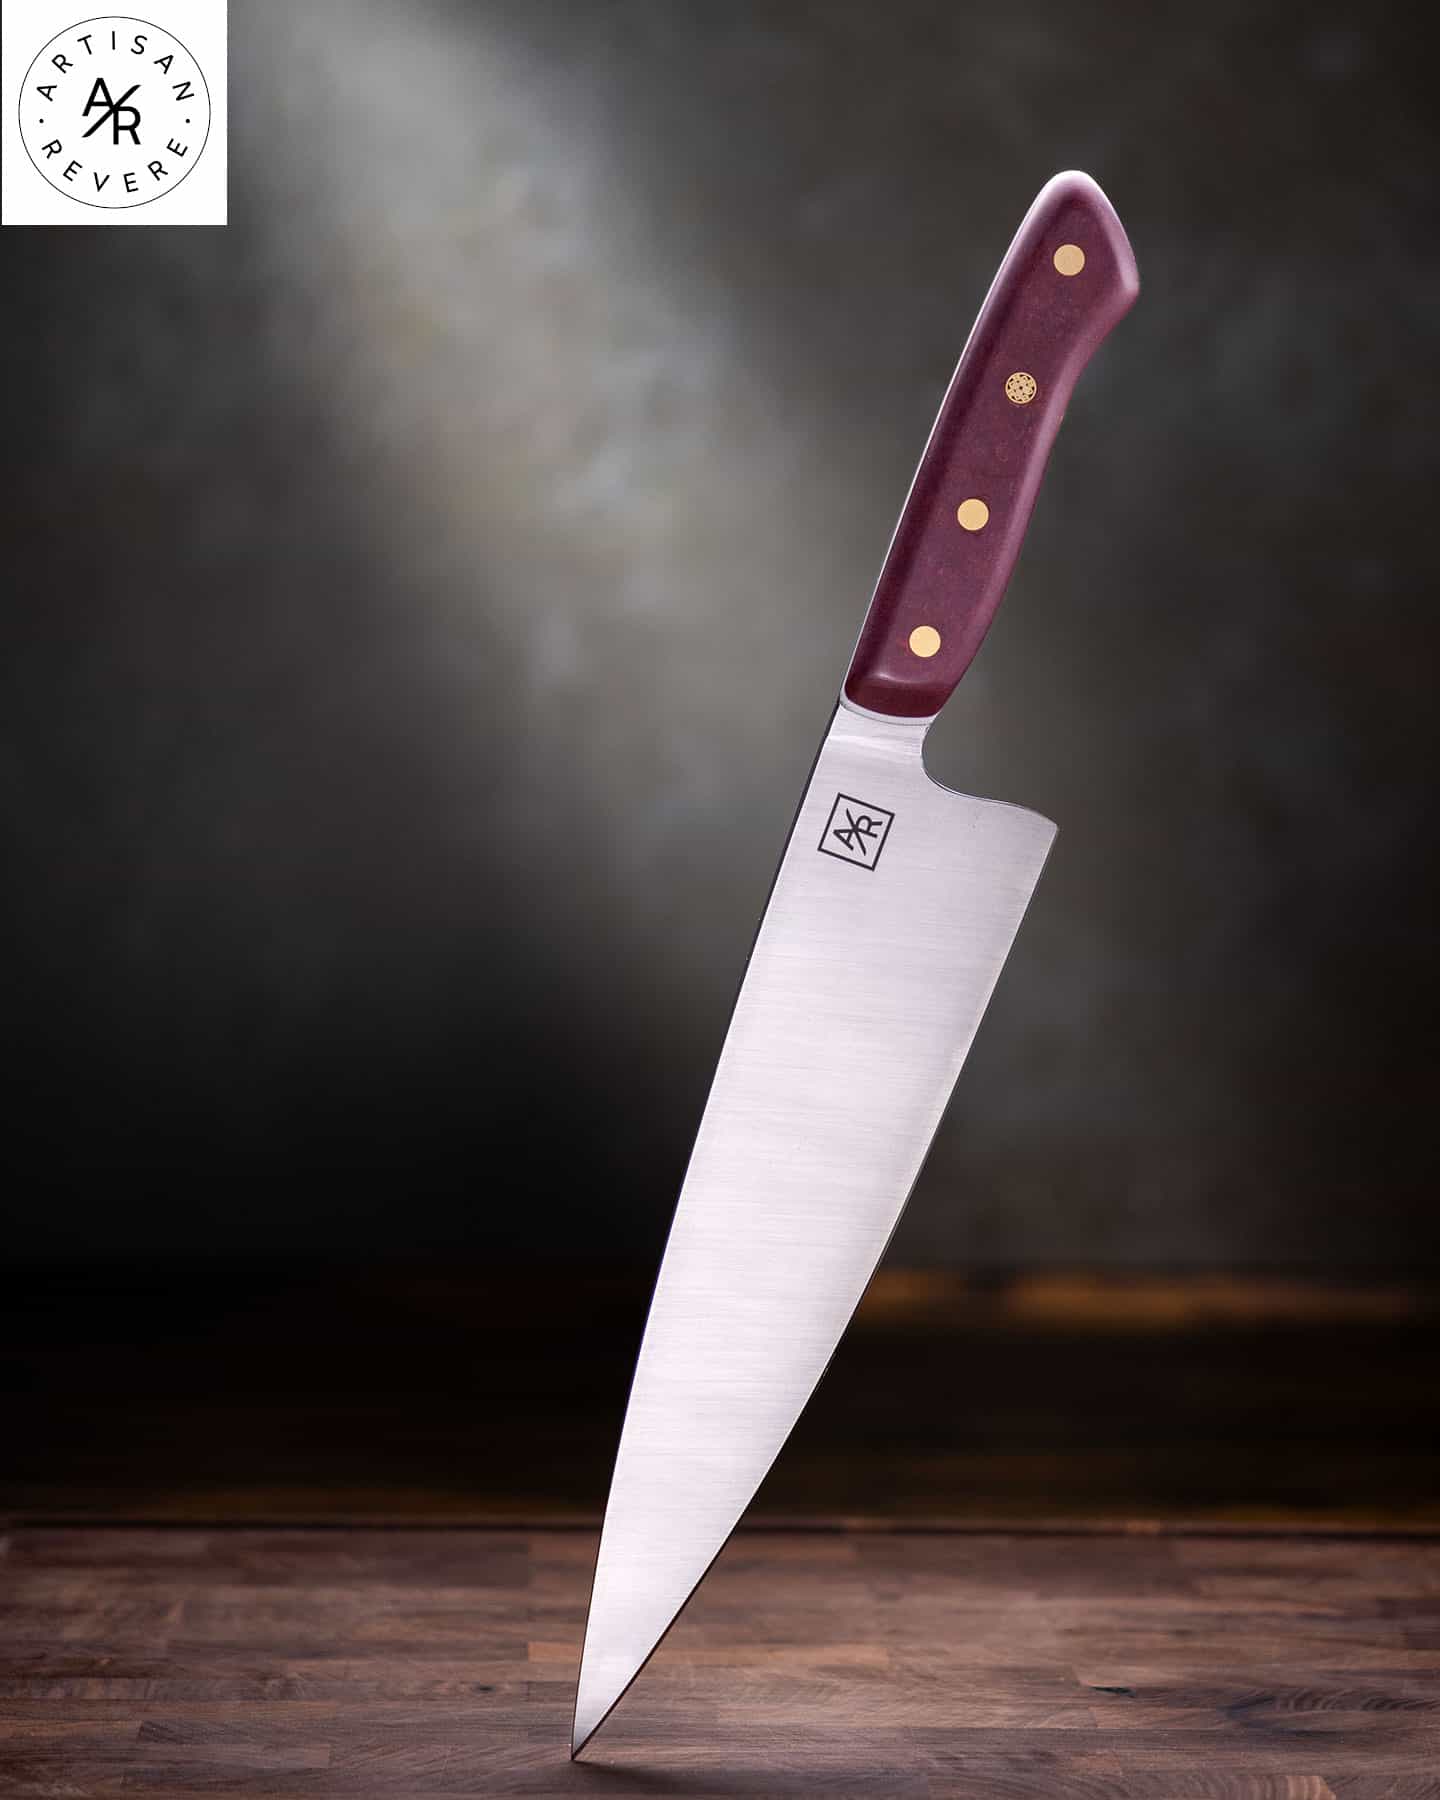 https://www.nothingbutknives.com/wp-content/uploads/2018/10/Artisan-Revere-Knife-Company.jpg